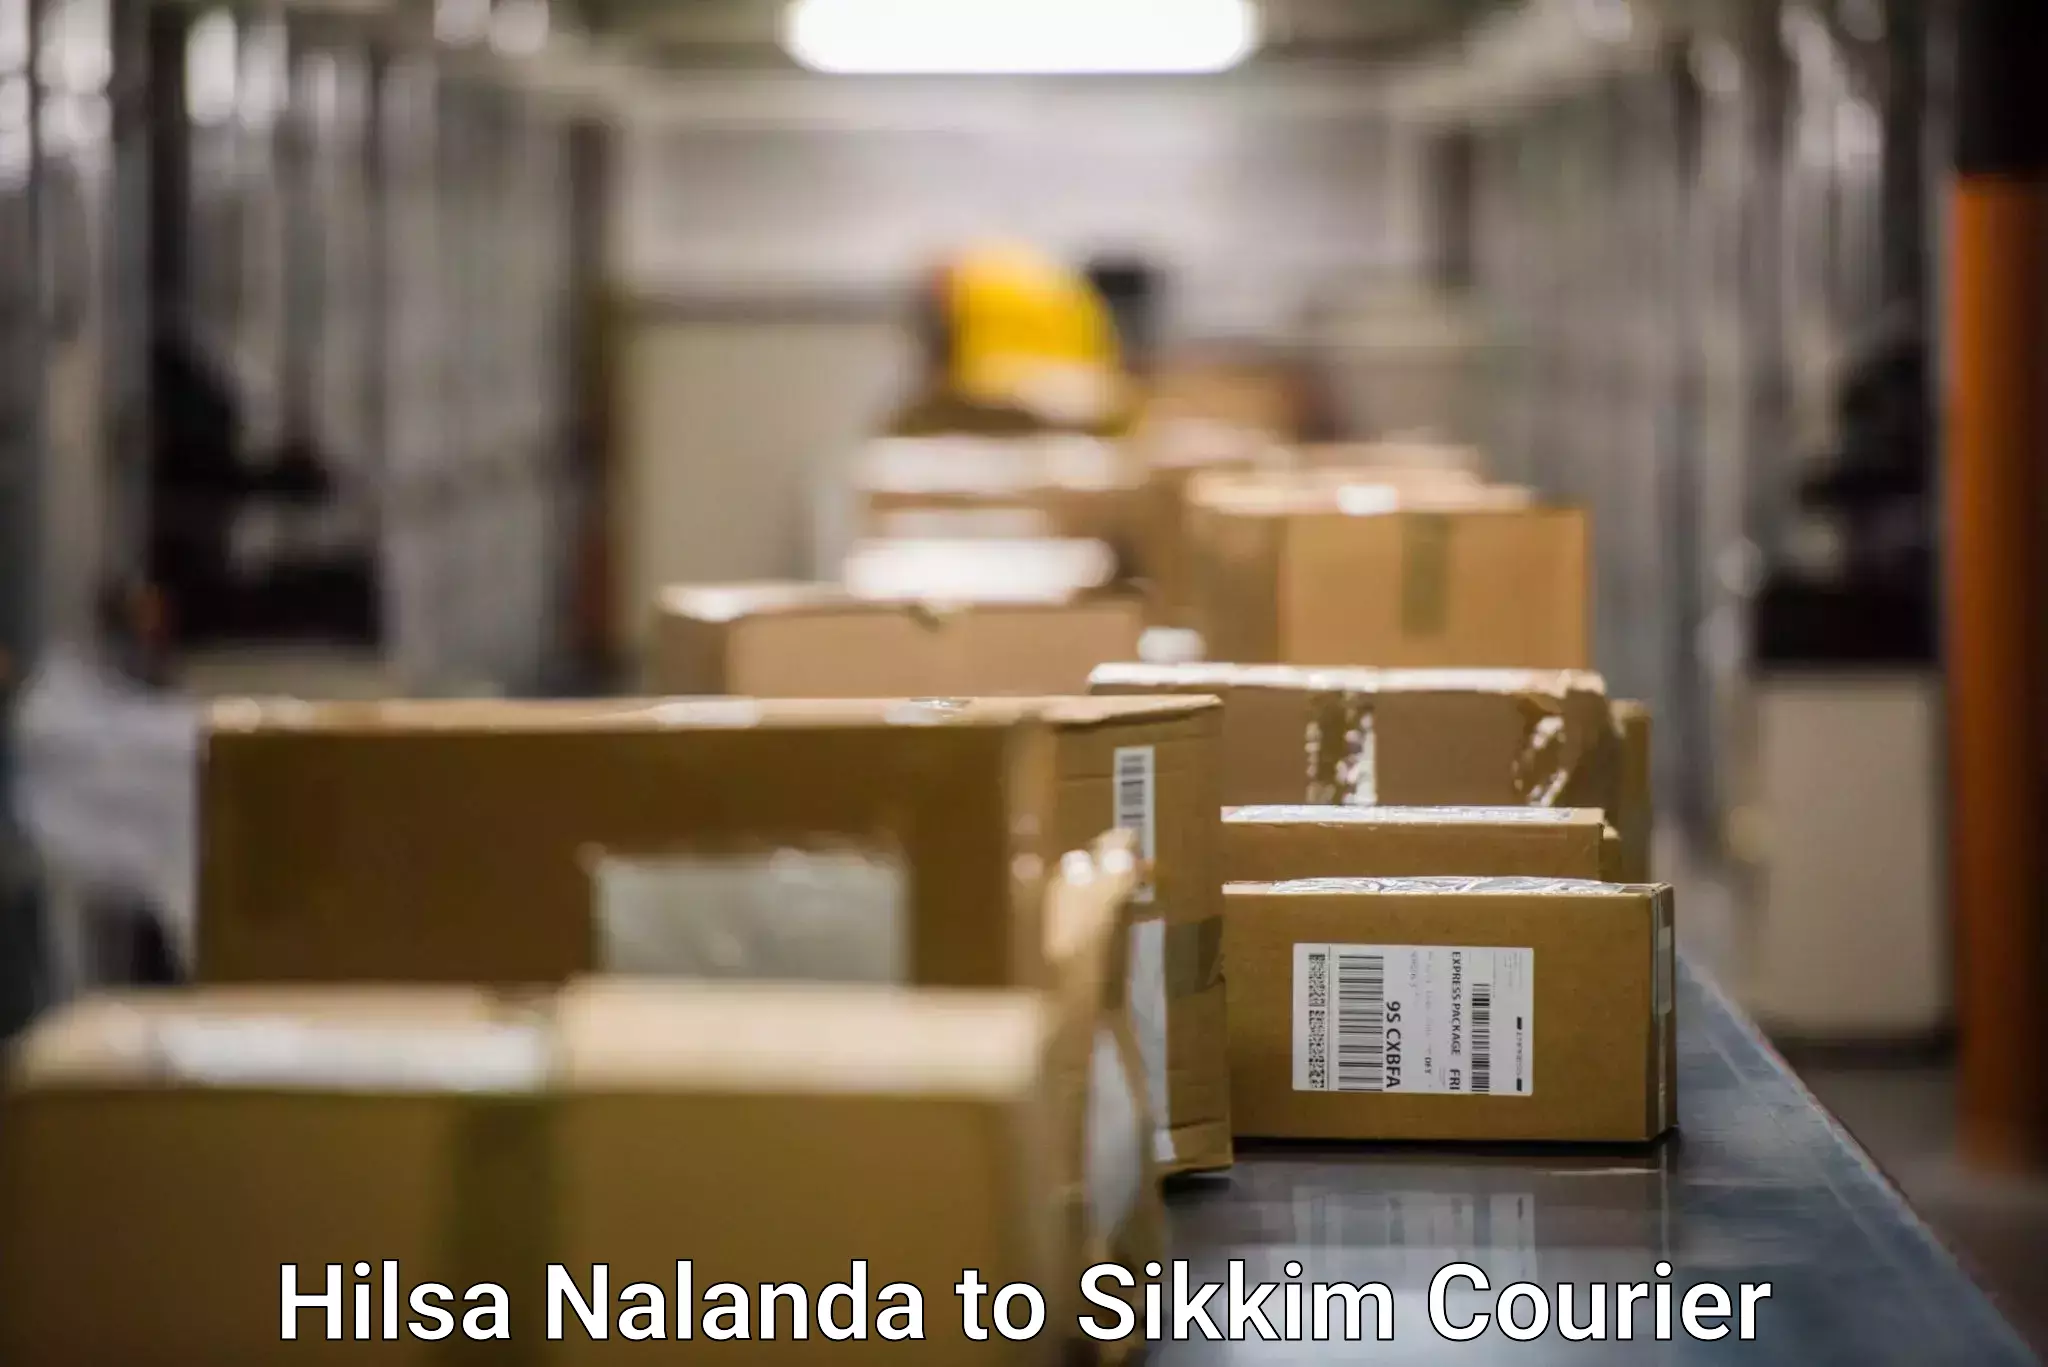 Express postal services Hilsa Nalanda to NIT Sikkim